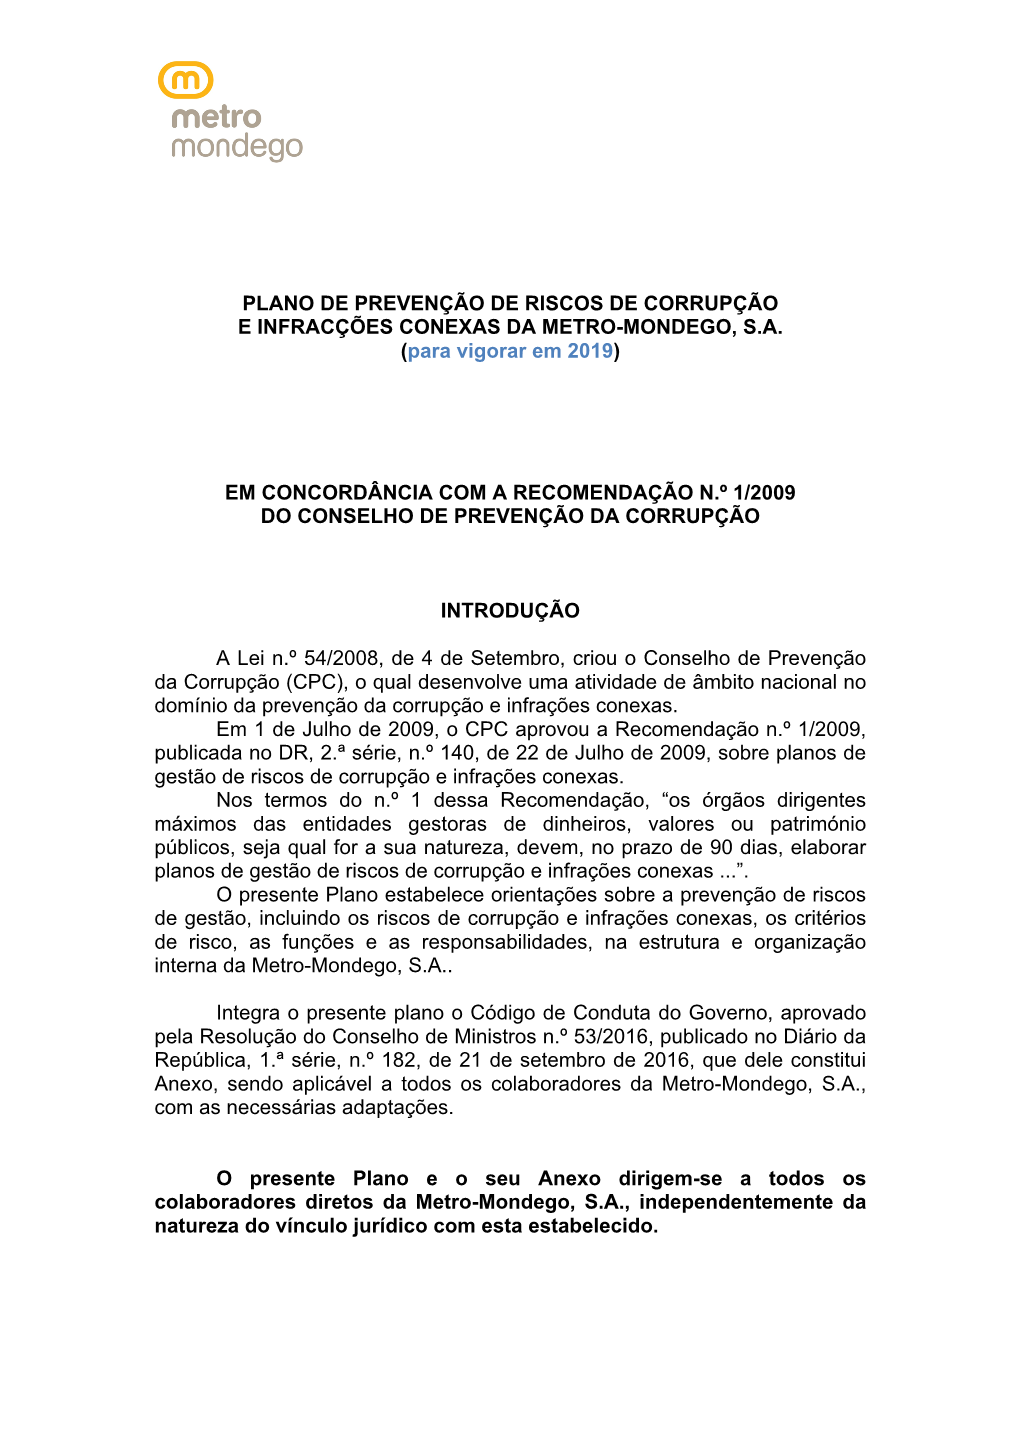 Plano De Prevenção De Riscos De Corrupção E Infracções Conexas Da Metro-Mondego, S.A